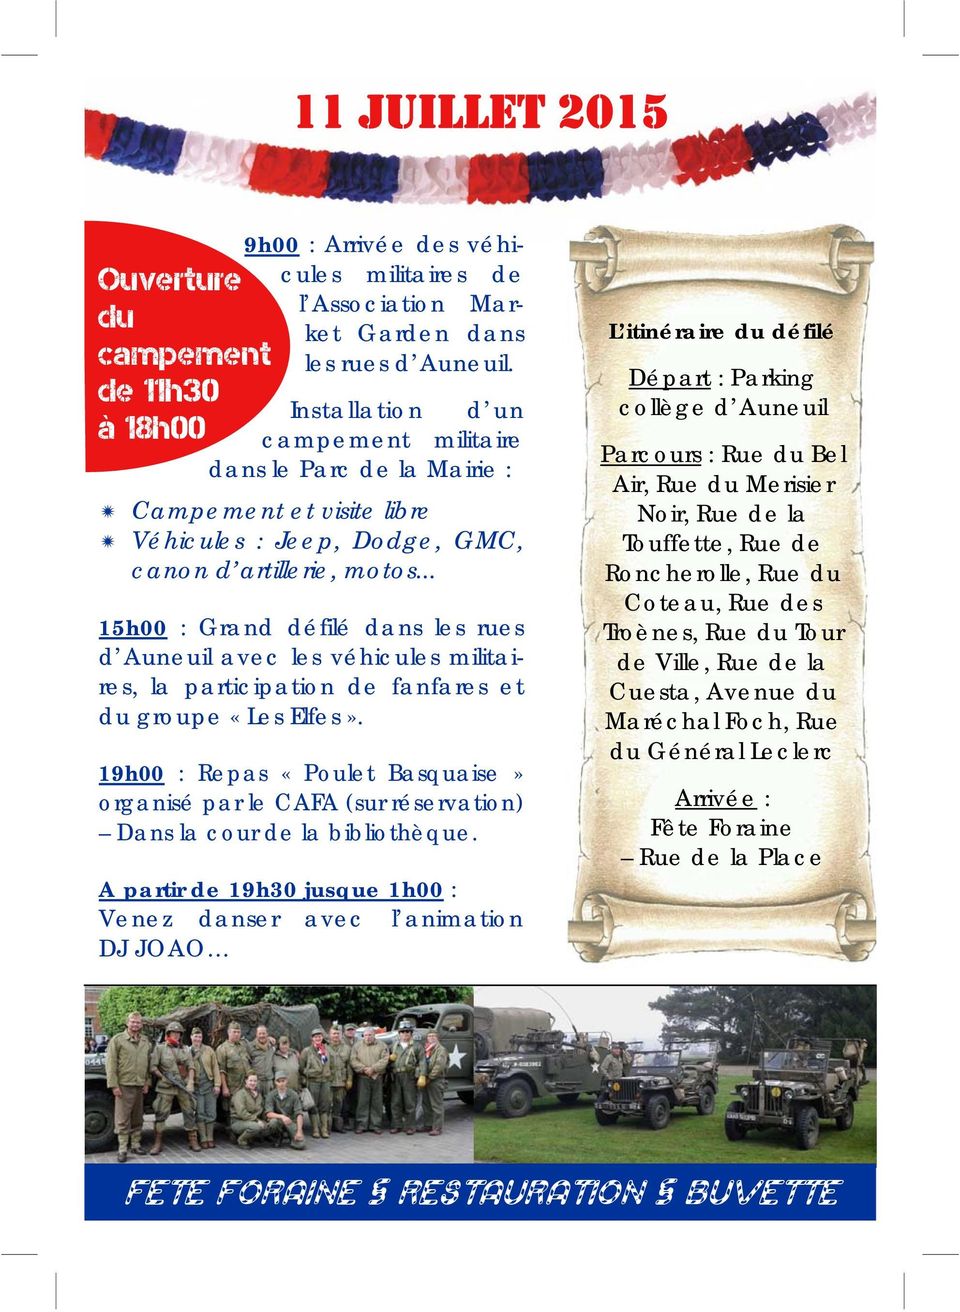 .. 15h00 : Grand défilé dans les rues d Auneuil avec les véhicules militaires, la participation de fanfares et du groupe «Les Elfes».